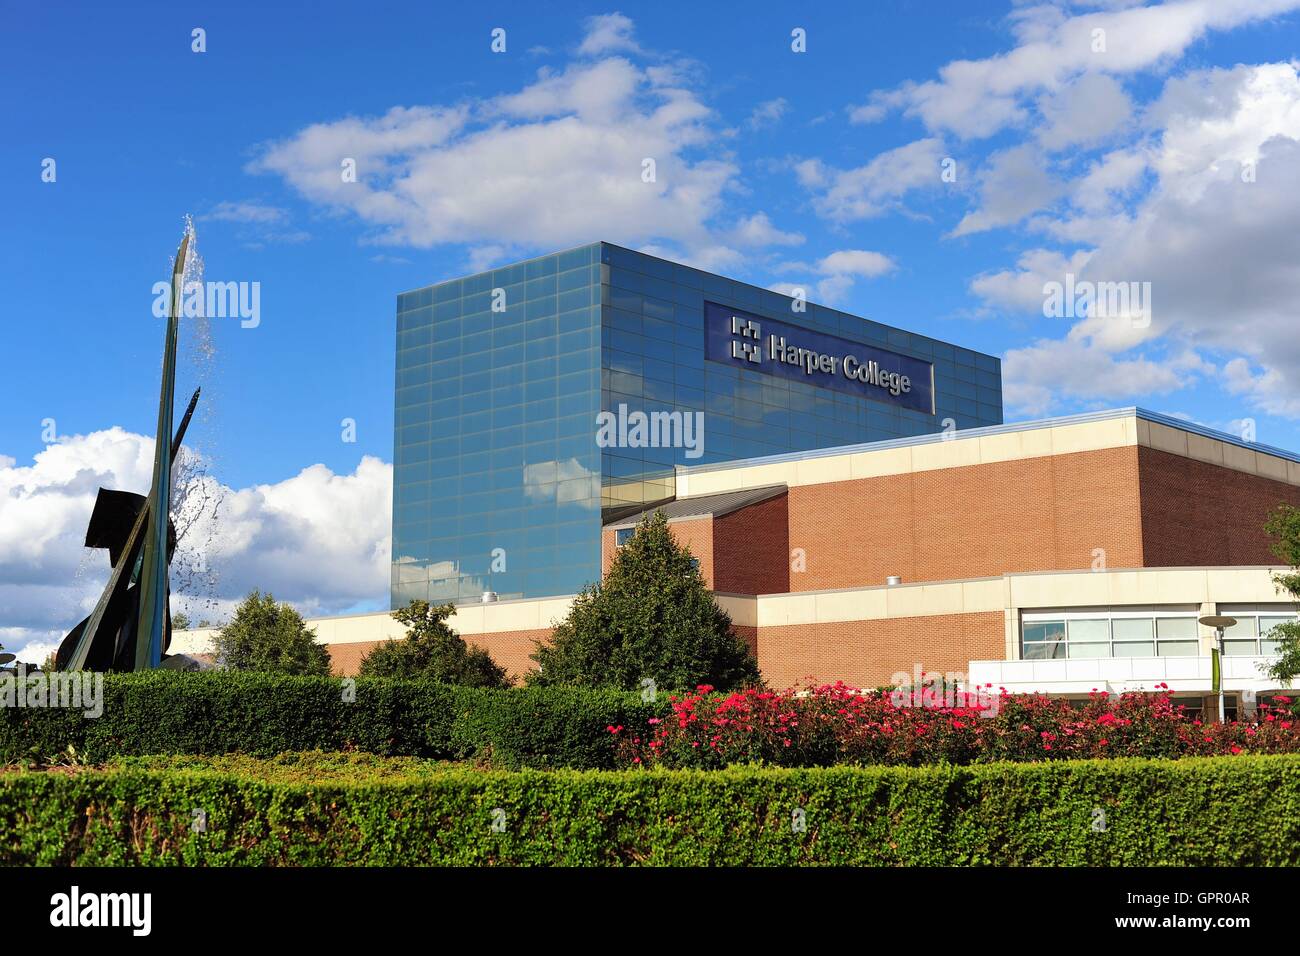 Der Hauptcampus der Harper College in Palatine, Illinois, USA. Stockfoto